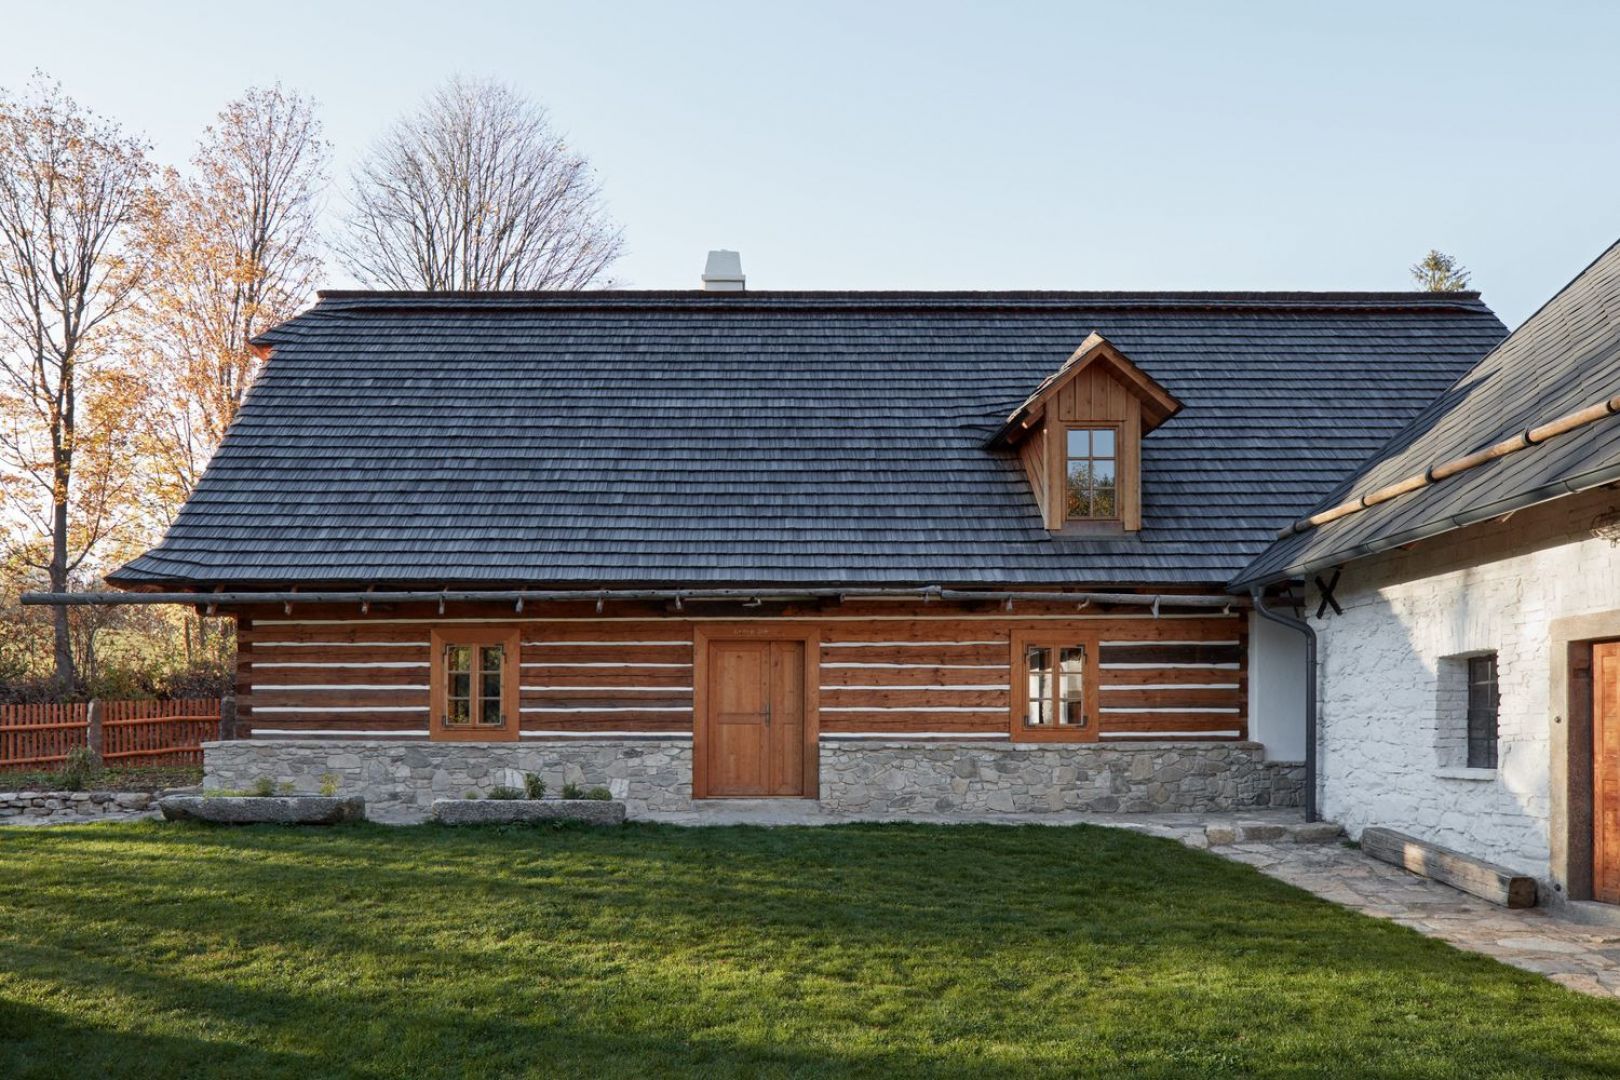 Ten dom powstał z połączenia i zaadaptowania dwóch budynków – startej stodoły oraz drewnianej chałupy wykonanej z bali. Fot. Jakub Skokan, Martin Tůma  BoysPlayNice